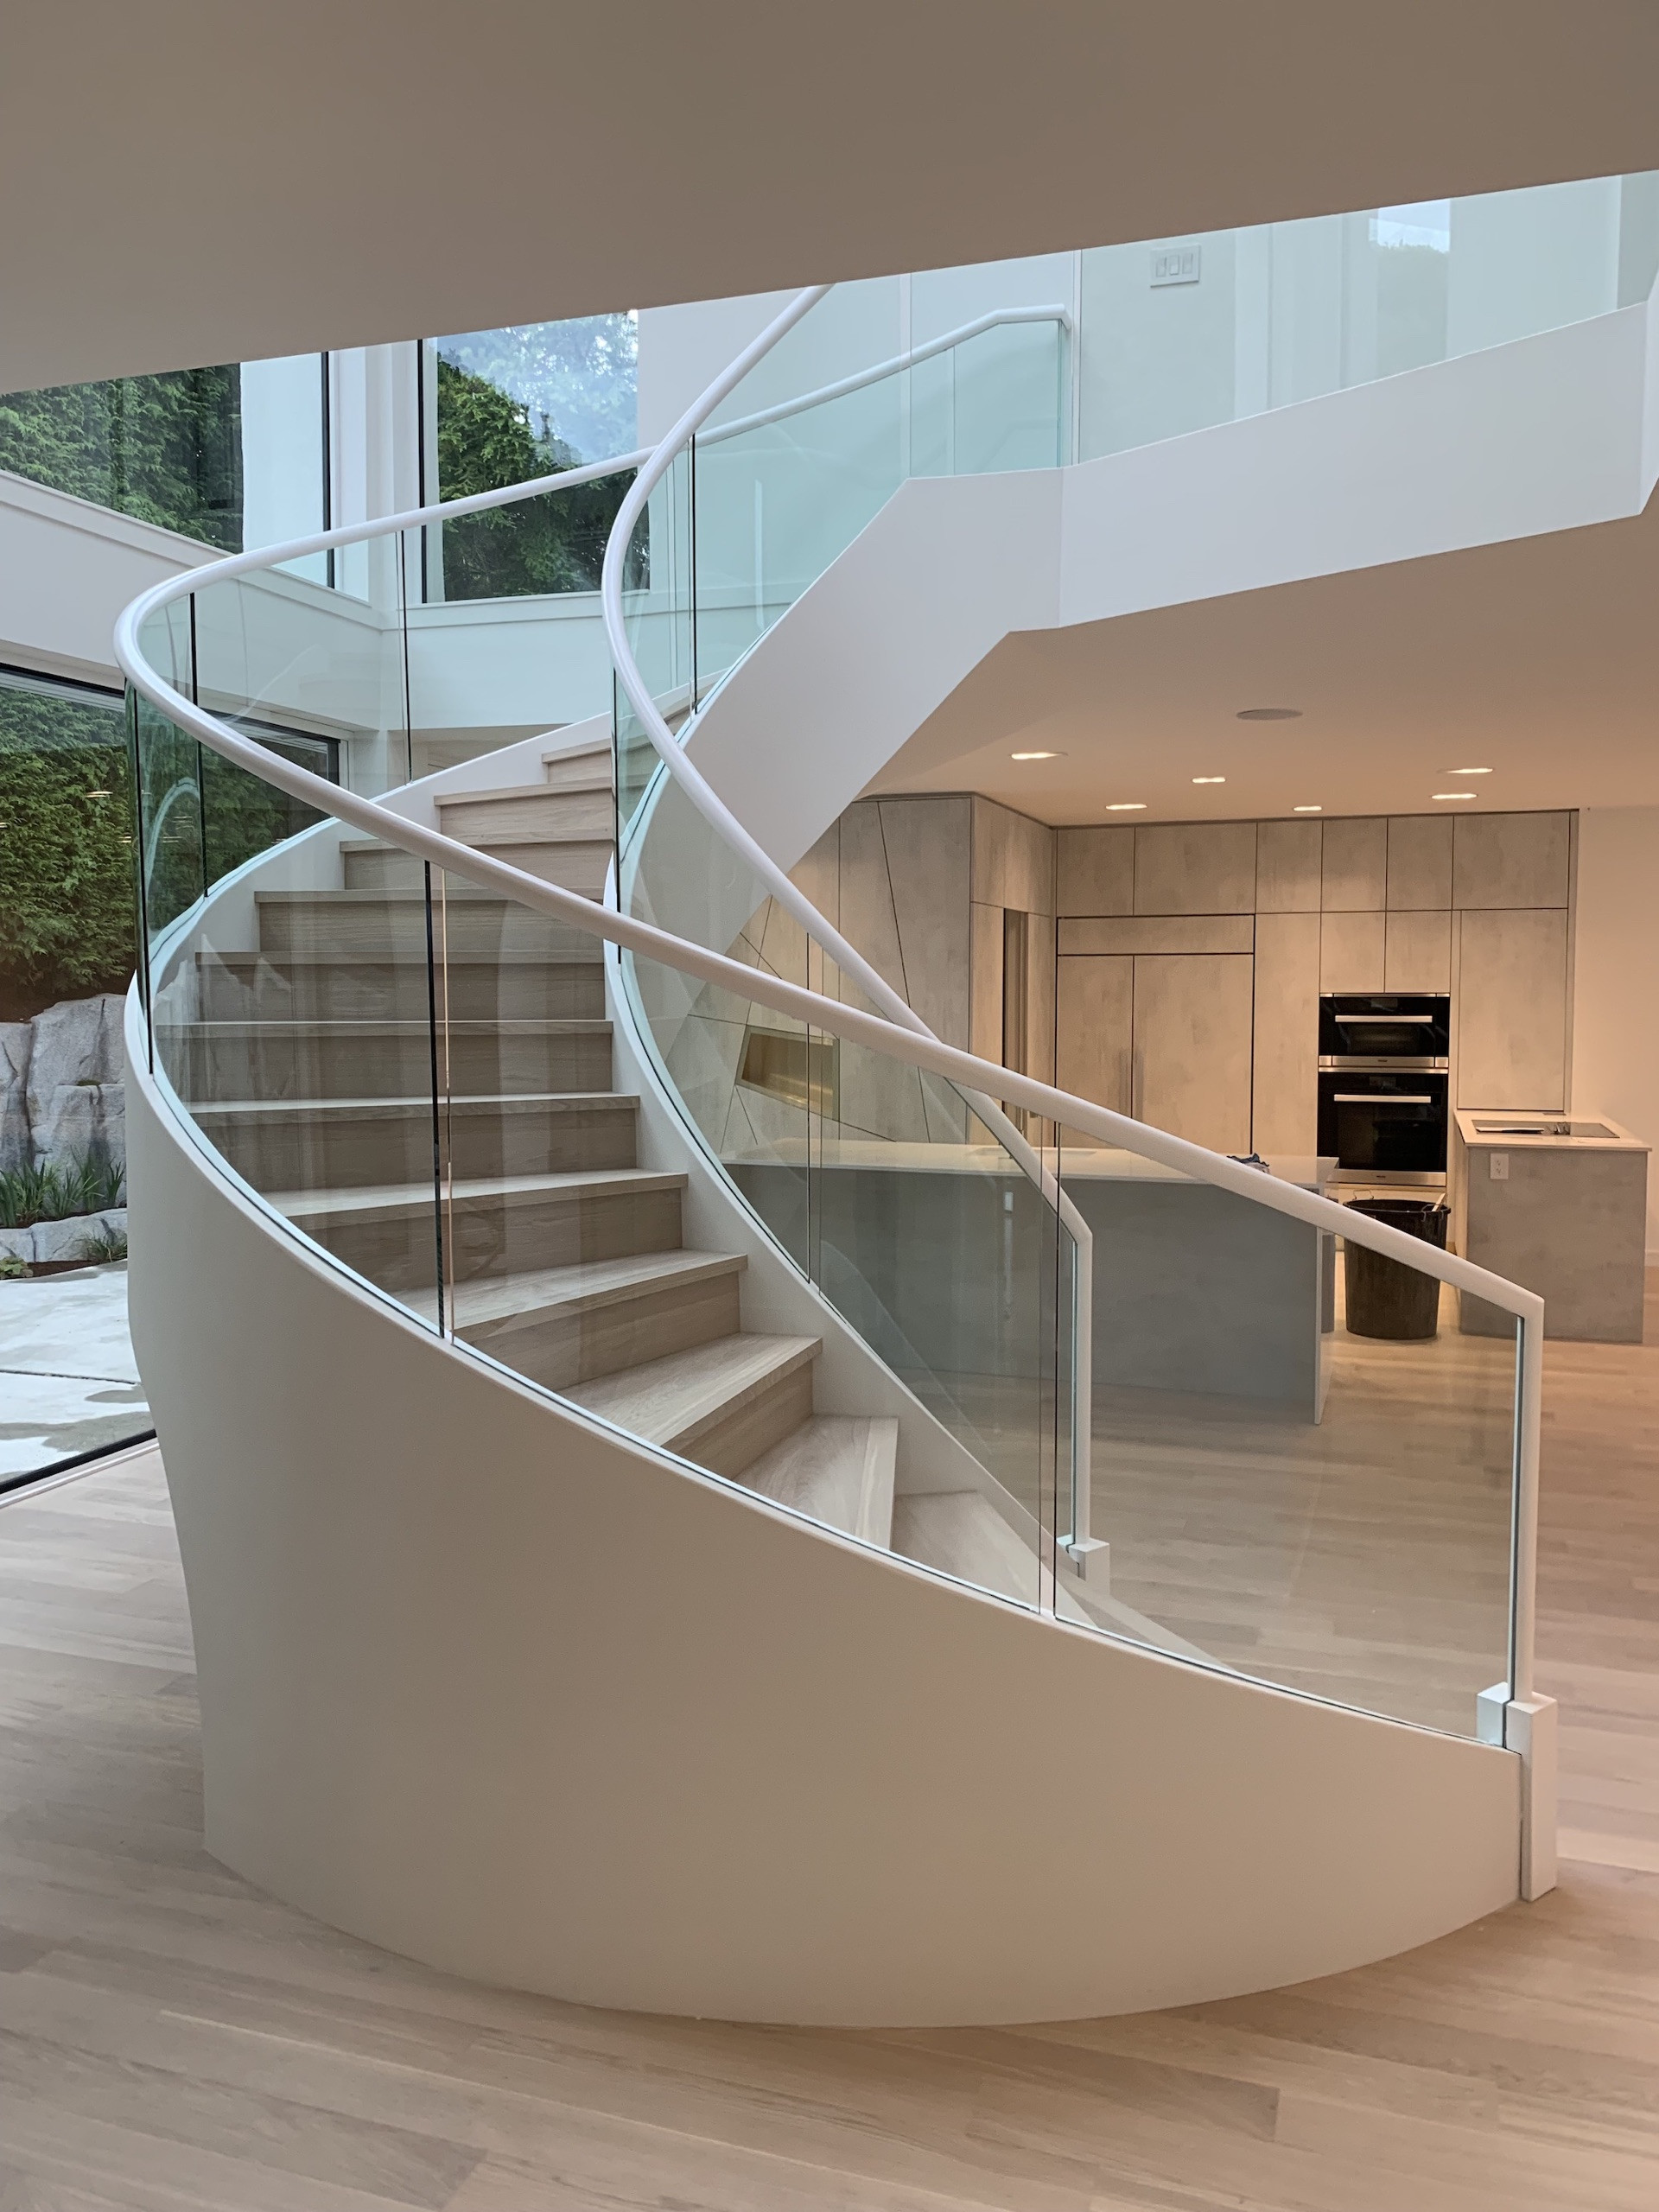 custom staircase design